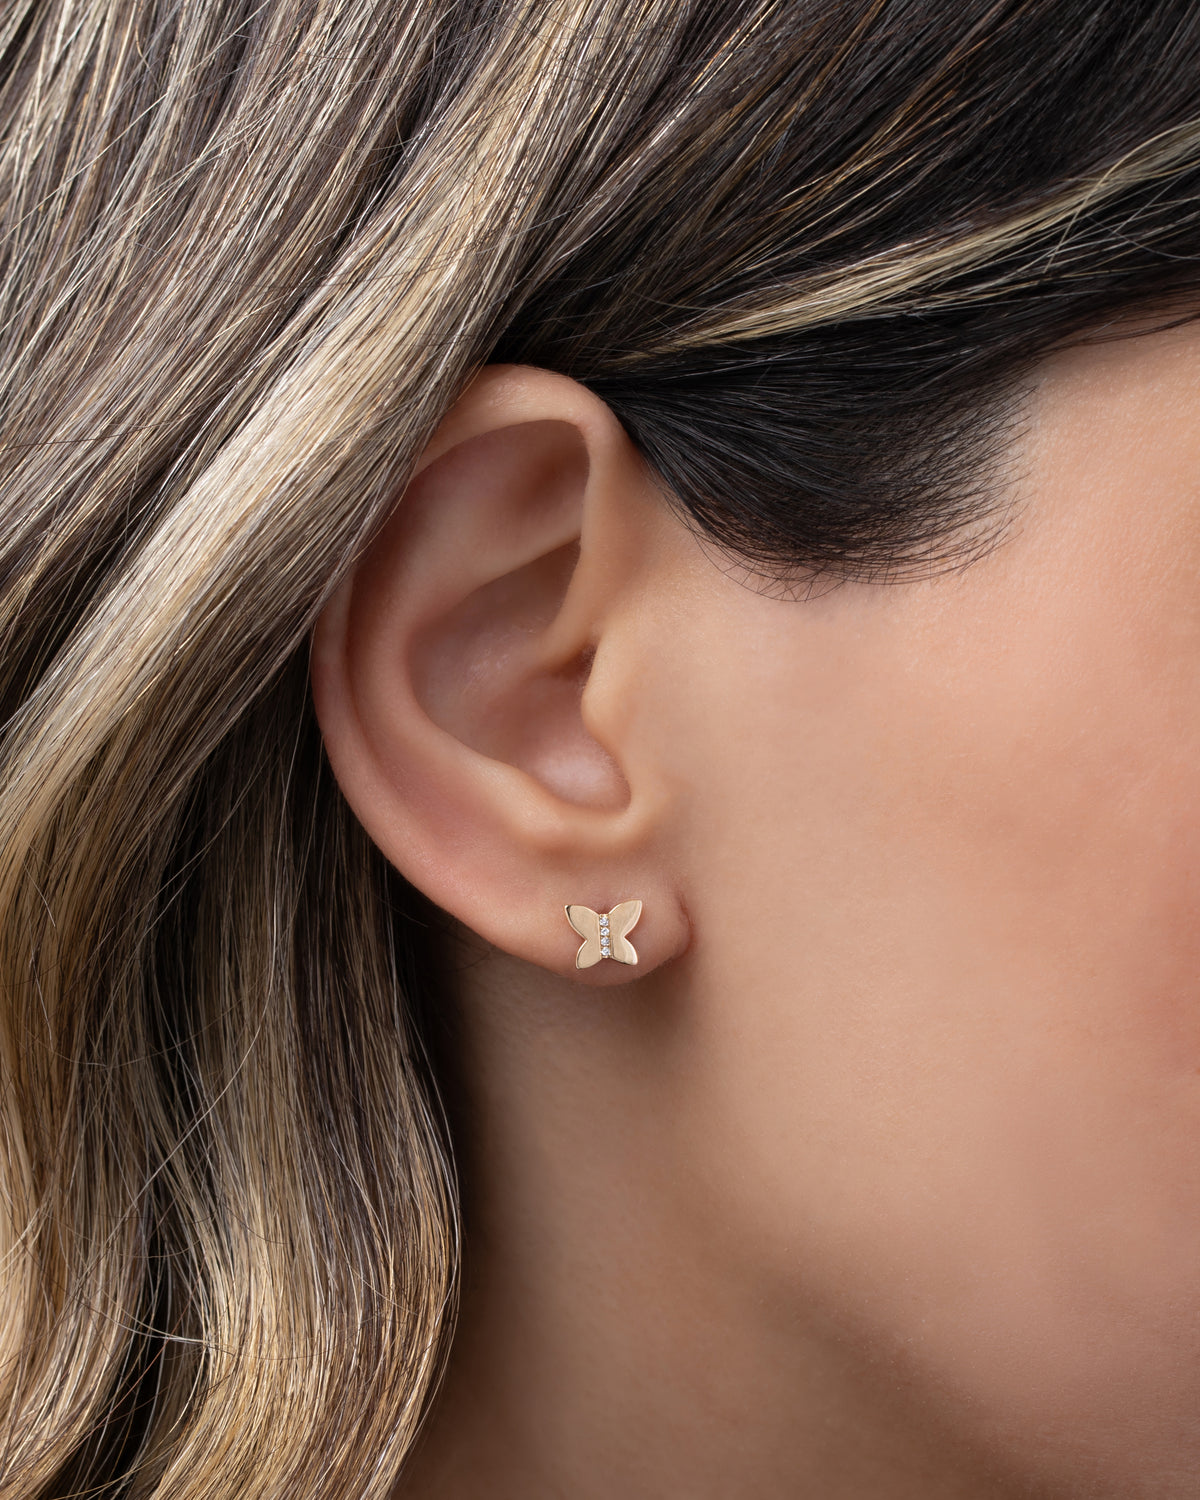 14k Gold Diamond Butterfly Stud Earrings